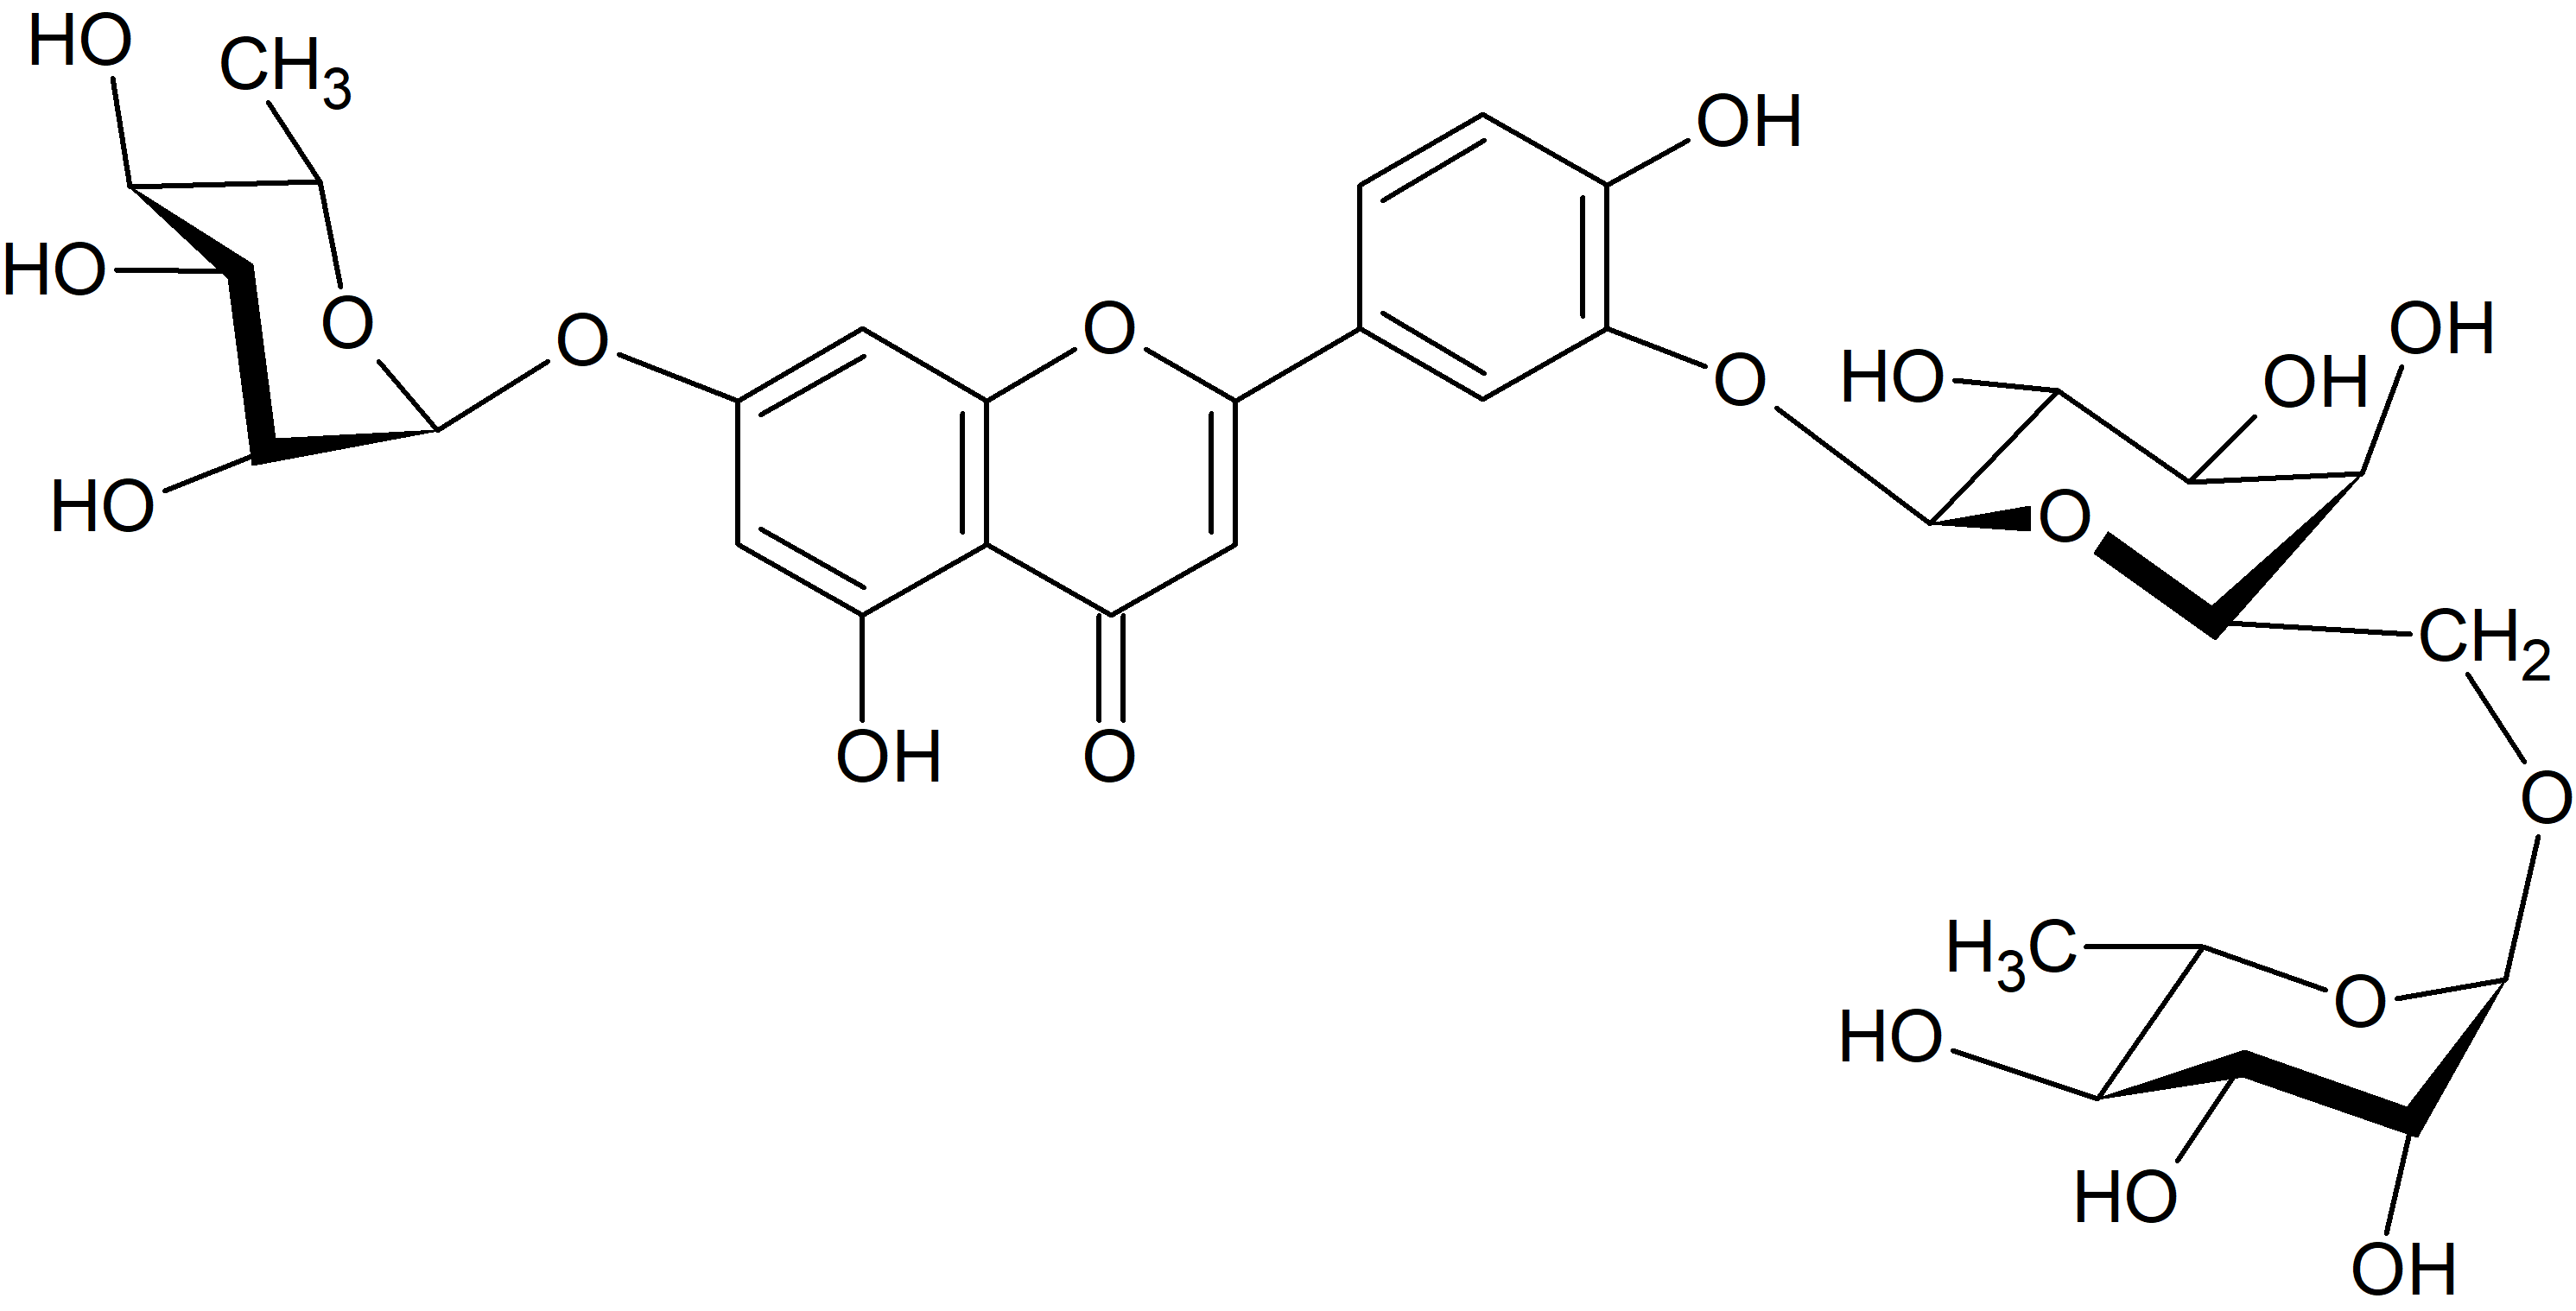 Kaempferol-3-O-galactoside-(1→6)-rhamnoside-7-O-rhamnoside